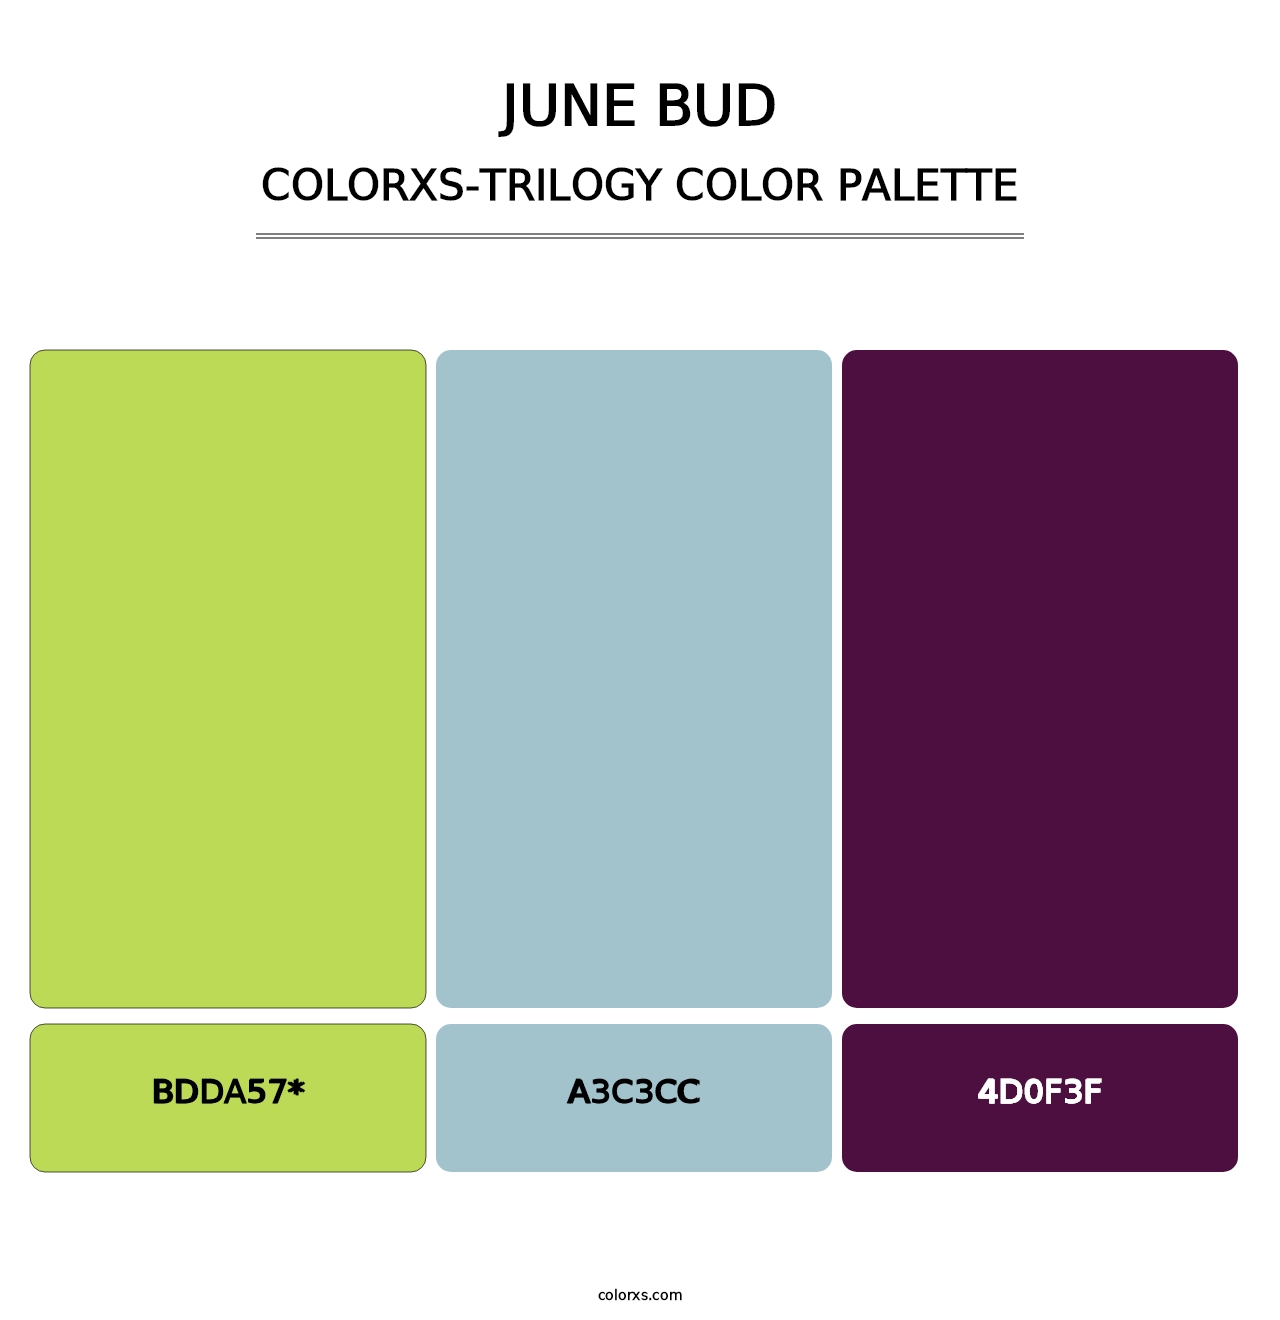 June Bud - Colorxs Trilogy Palette